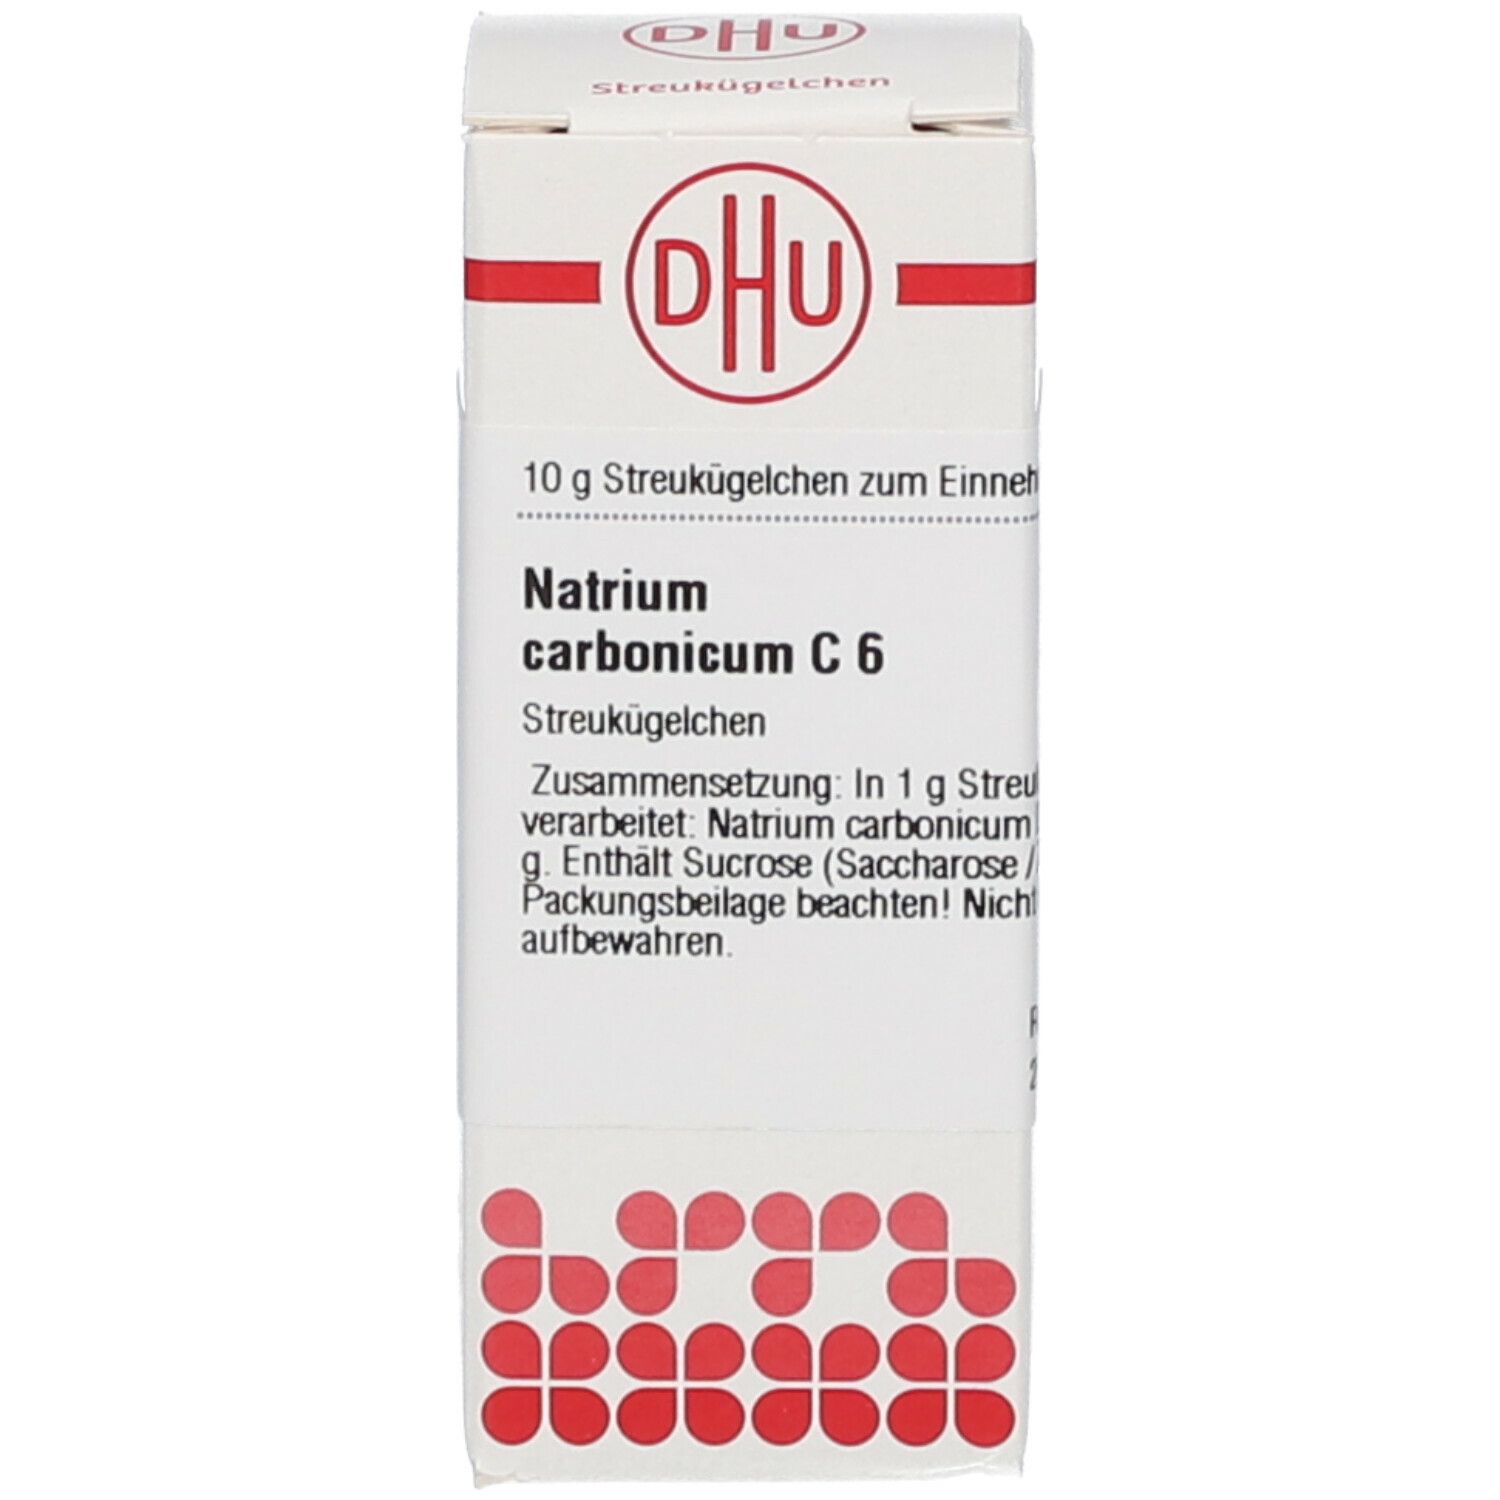 DHU Natrium Carbonicum C6